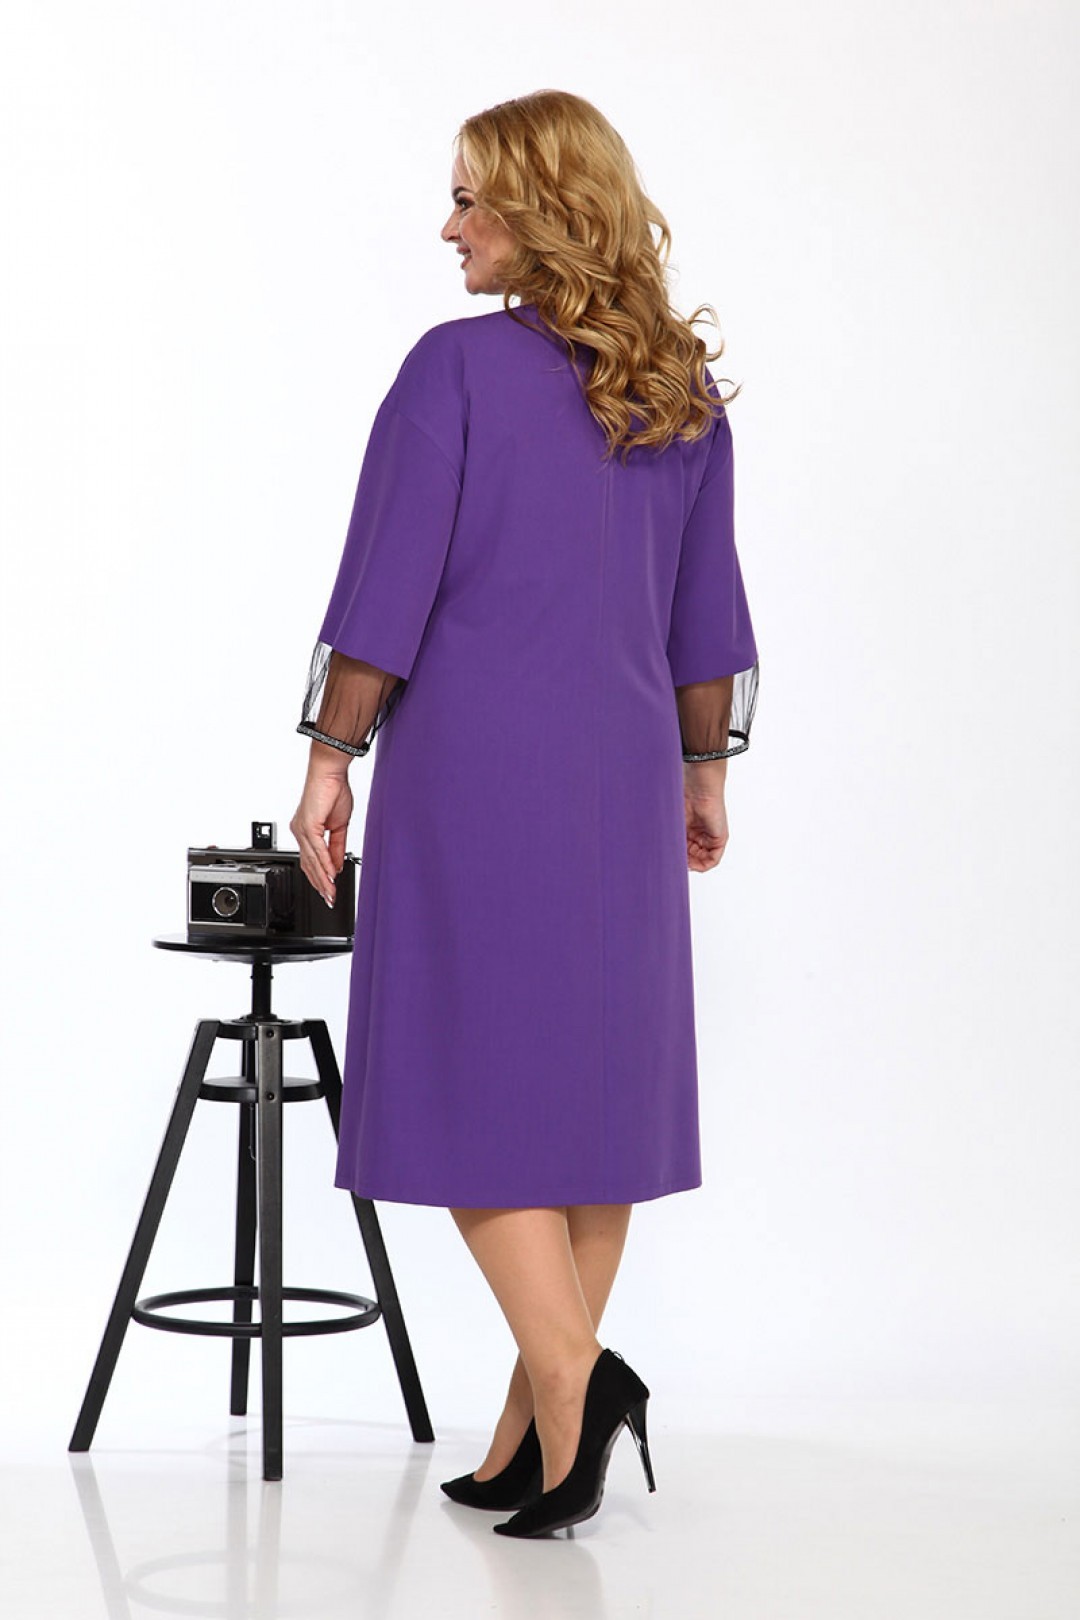 Платье Карина Делюкс М-9932 фиолетовый